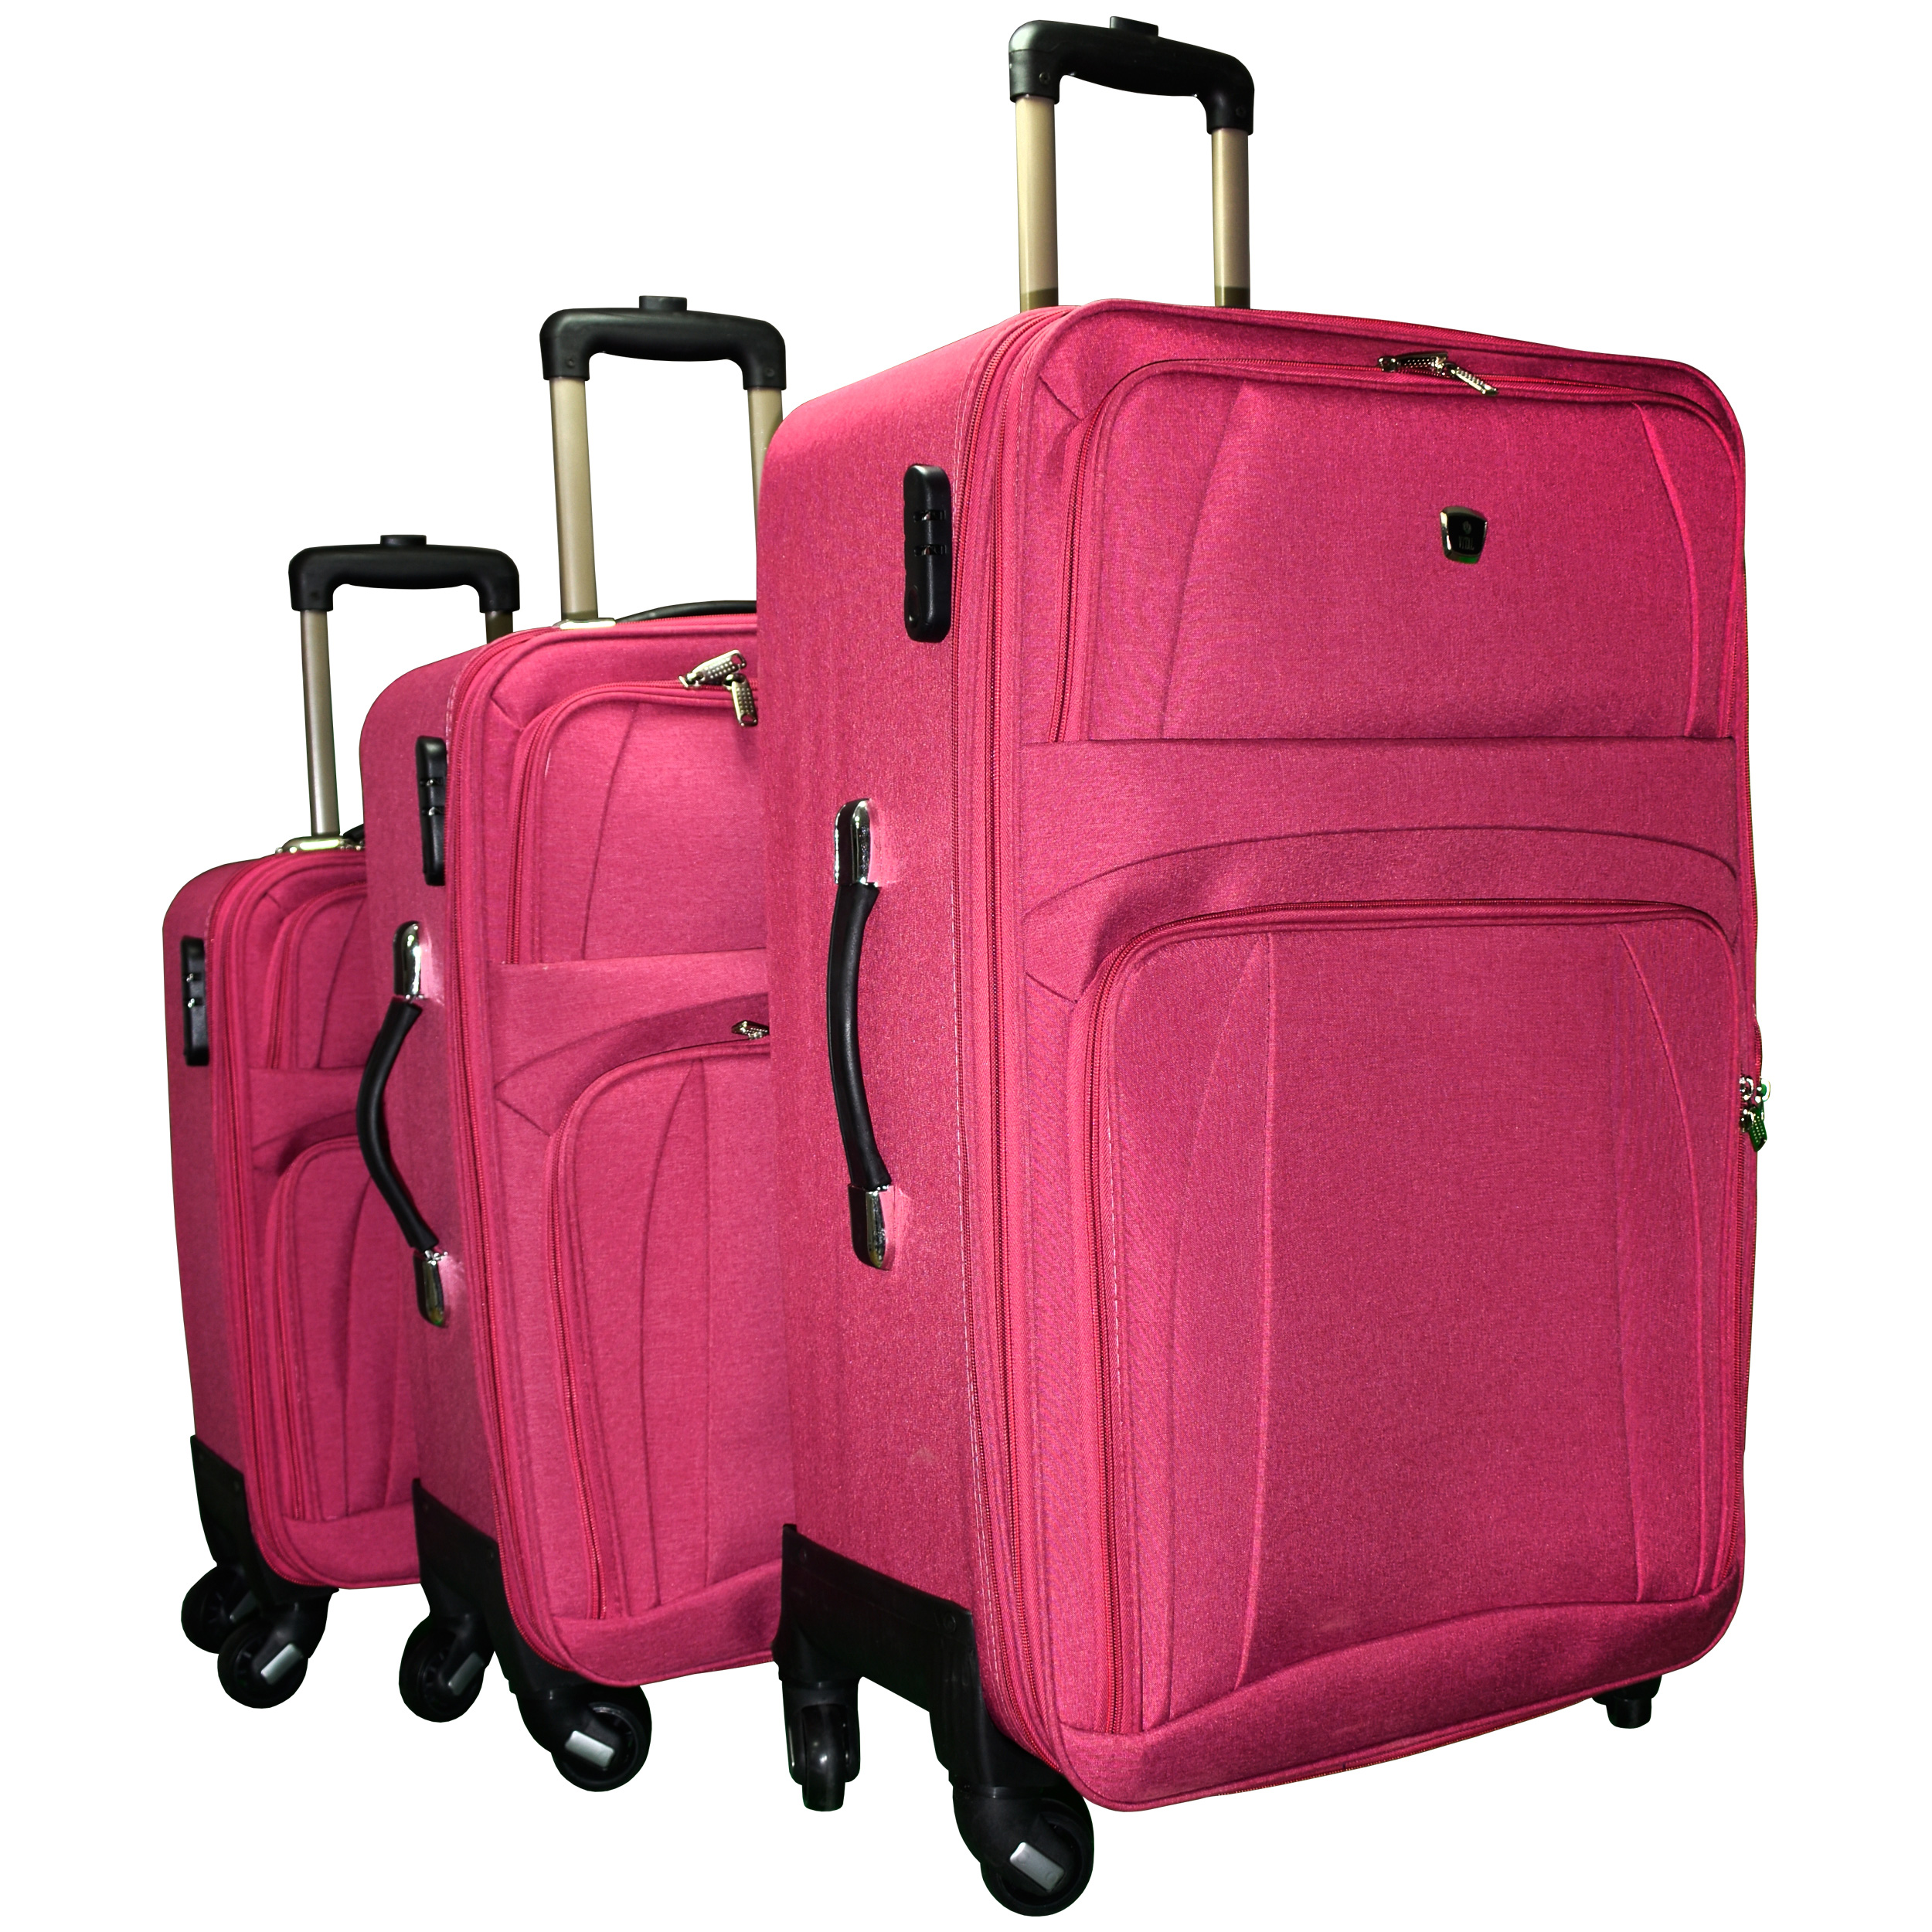 مجموعه سه عددی چمدان ویتال مدل ۶۵۷۹